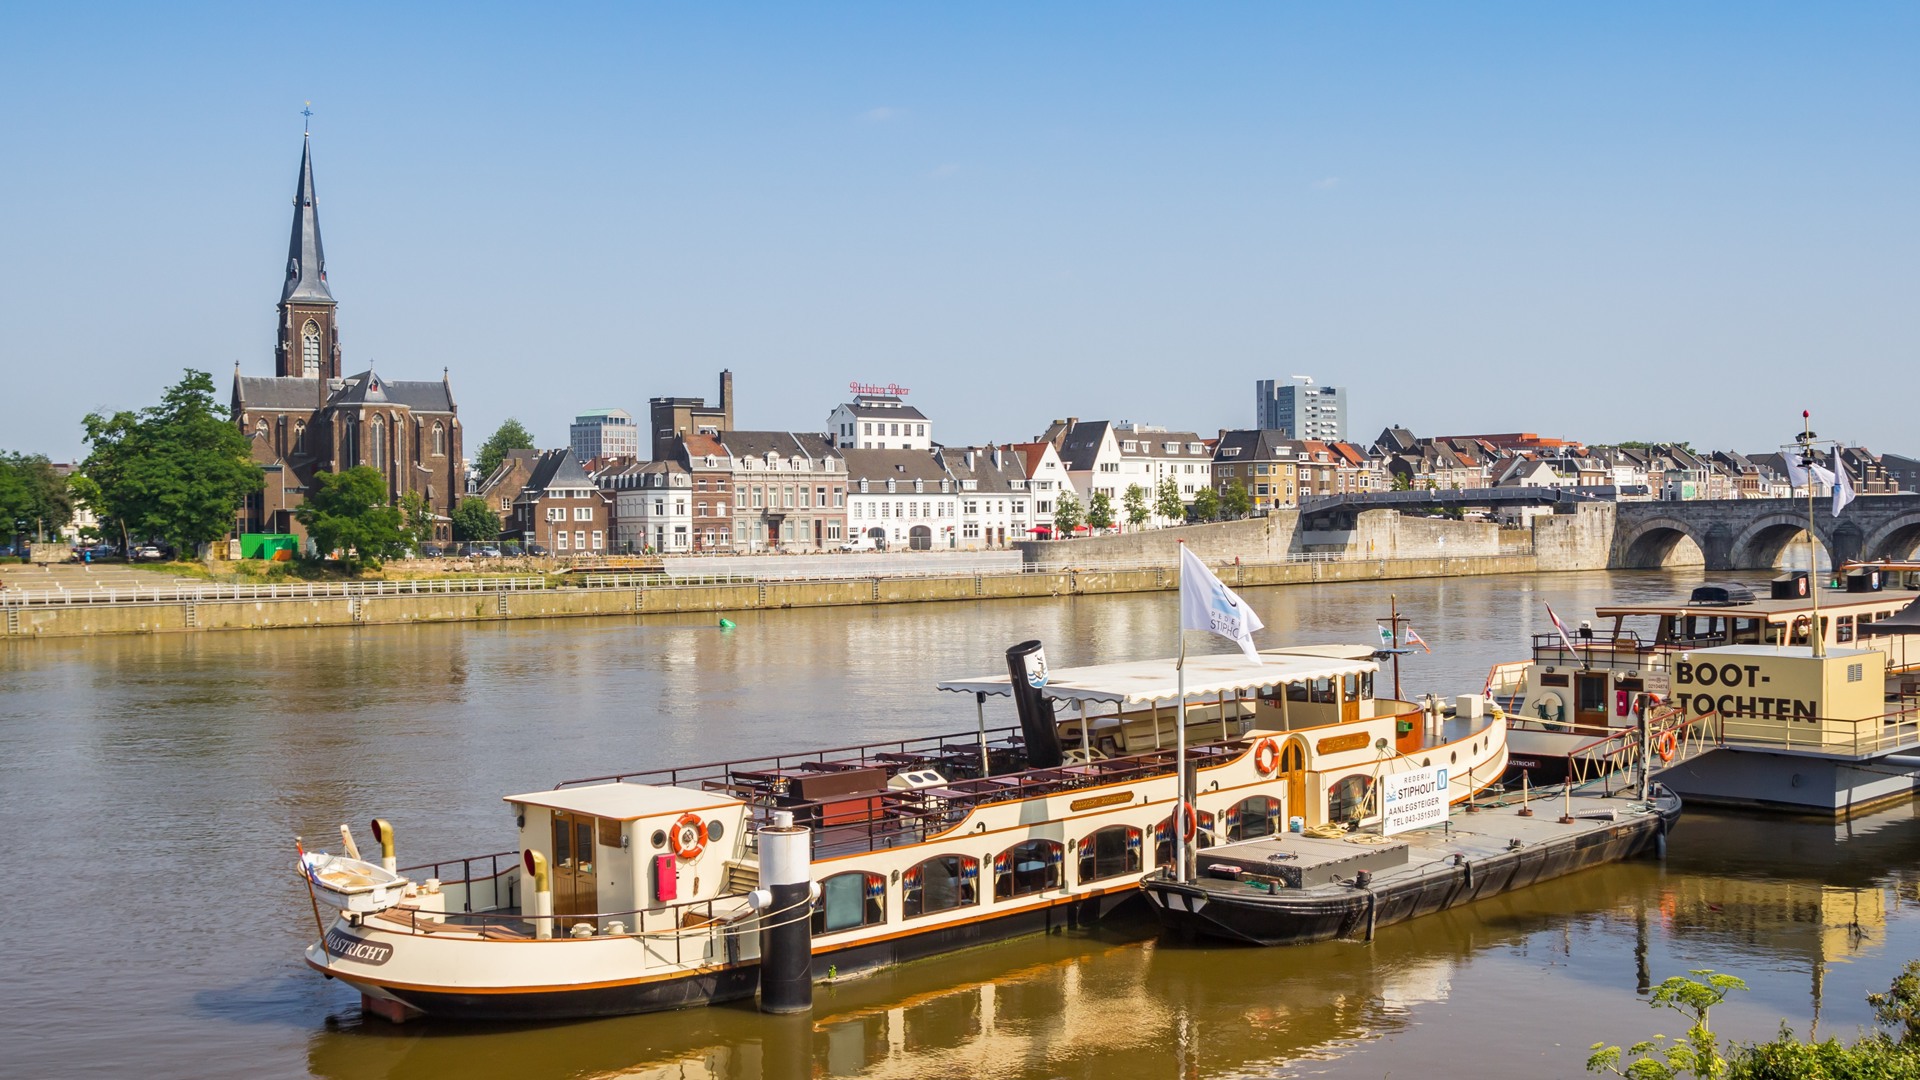 Pendant votre séjour à Maastricht, faites une promenade en bateau sur la Meuse et profitez du style de vie bourguignon